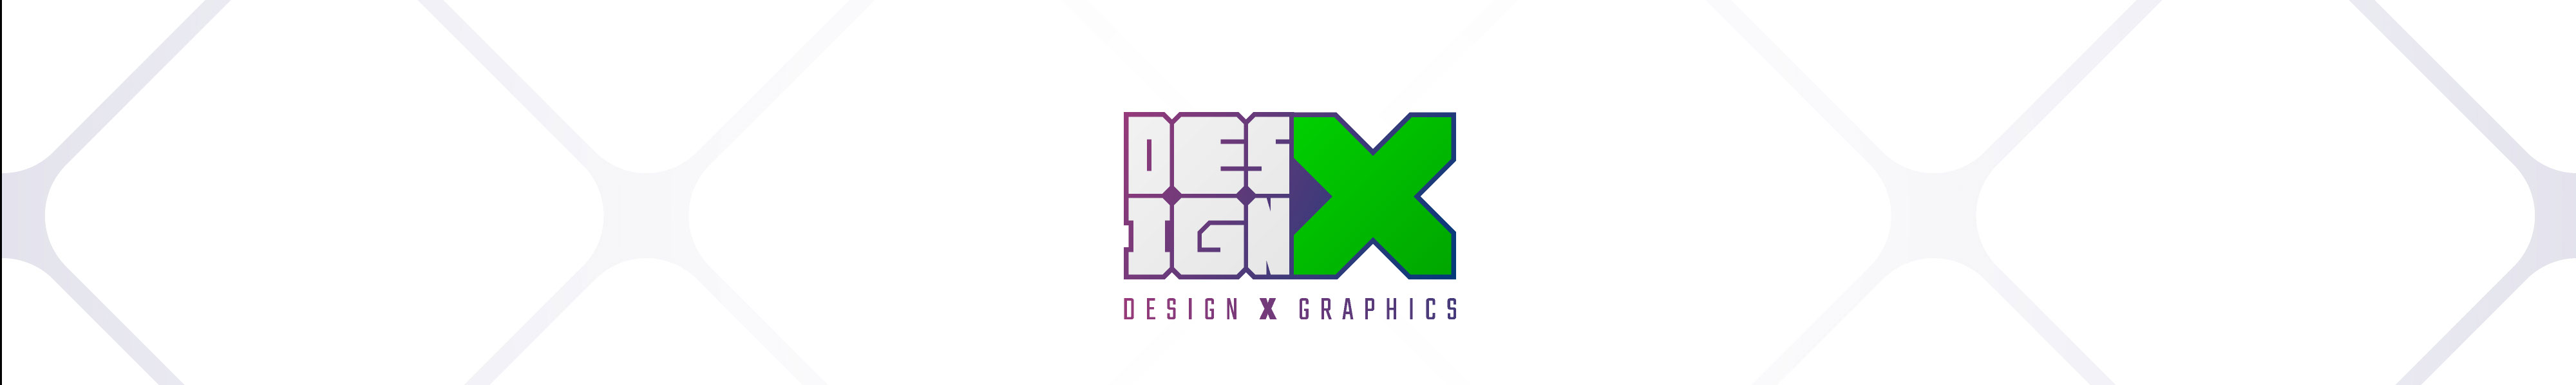 DESIGN X's profile banner